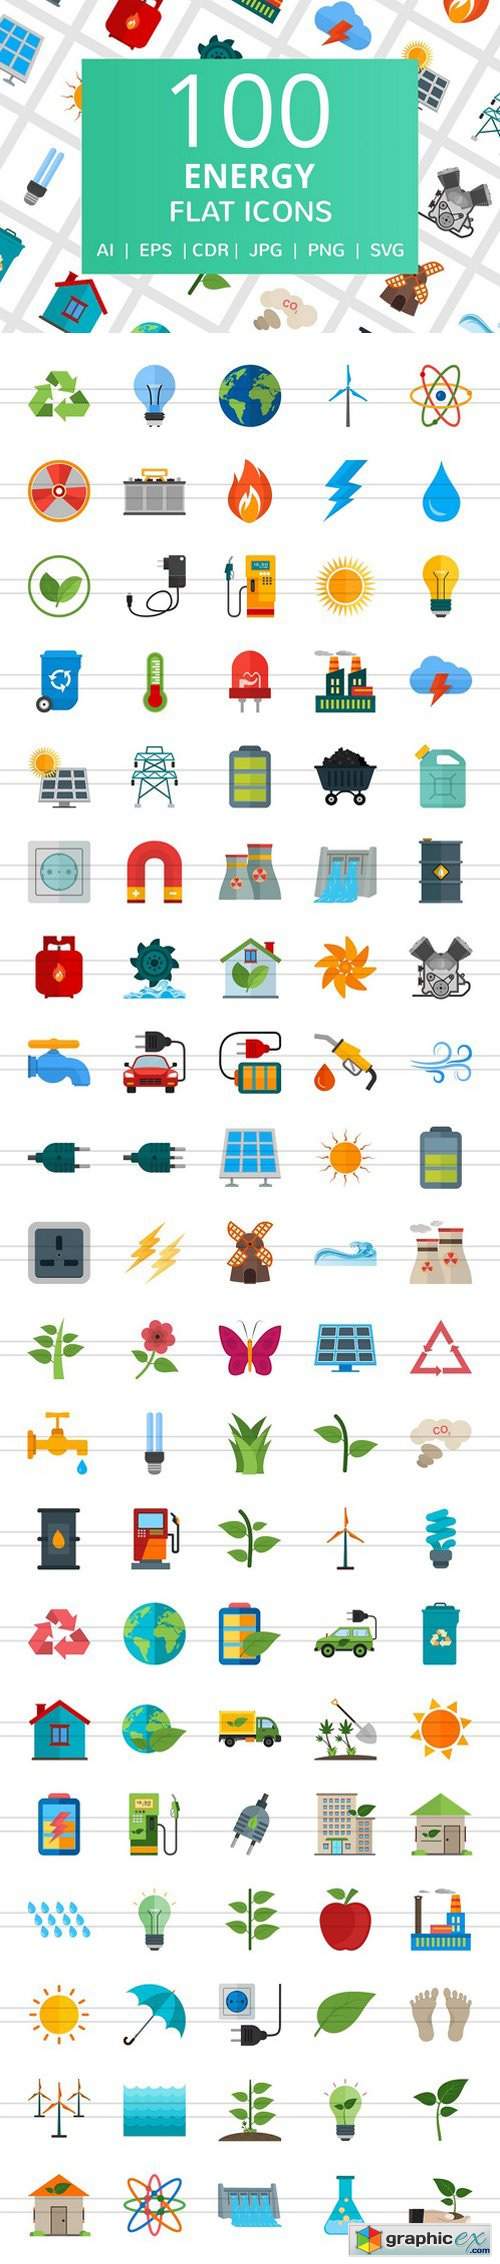 100 Energy Flat Icons